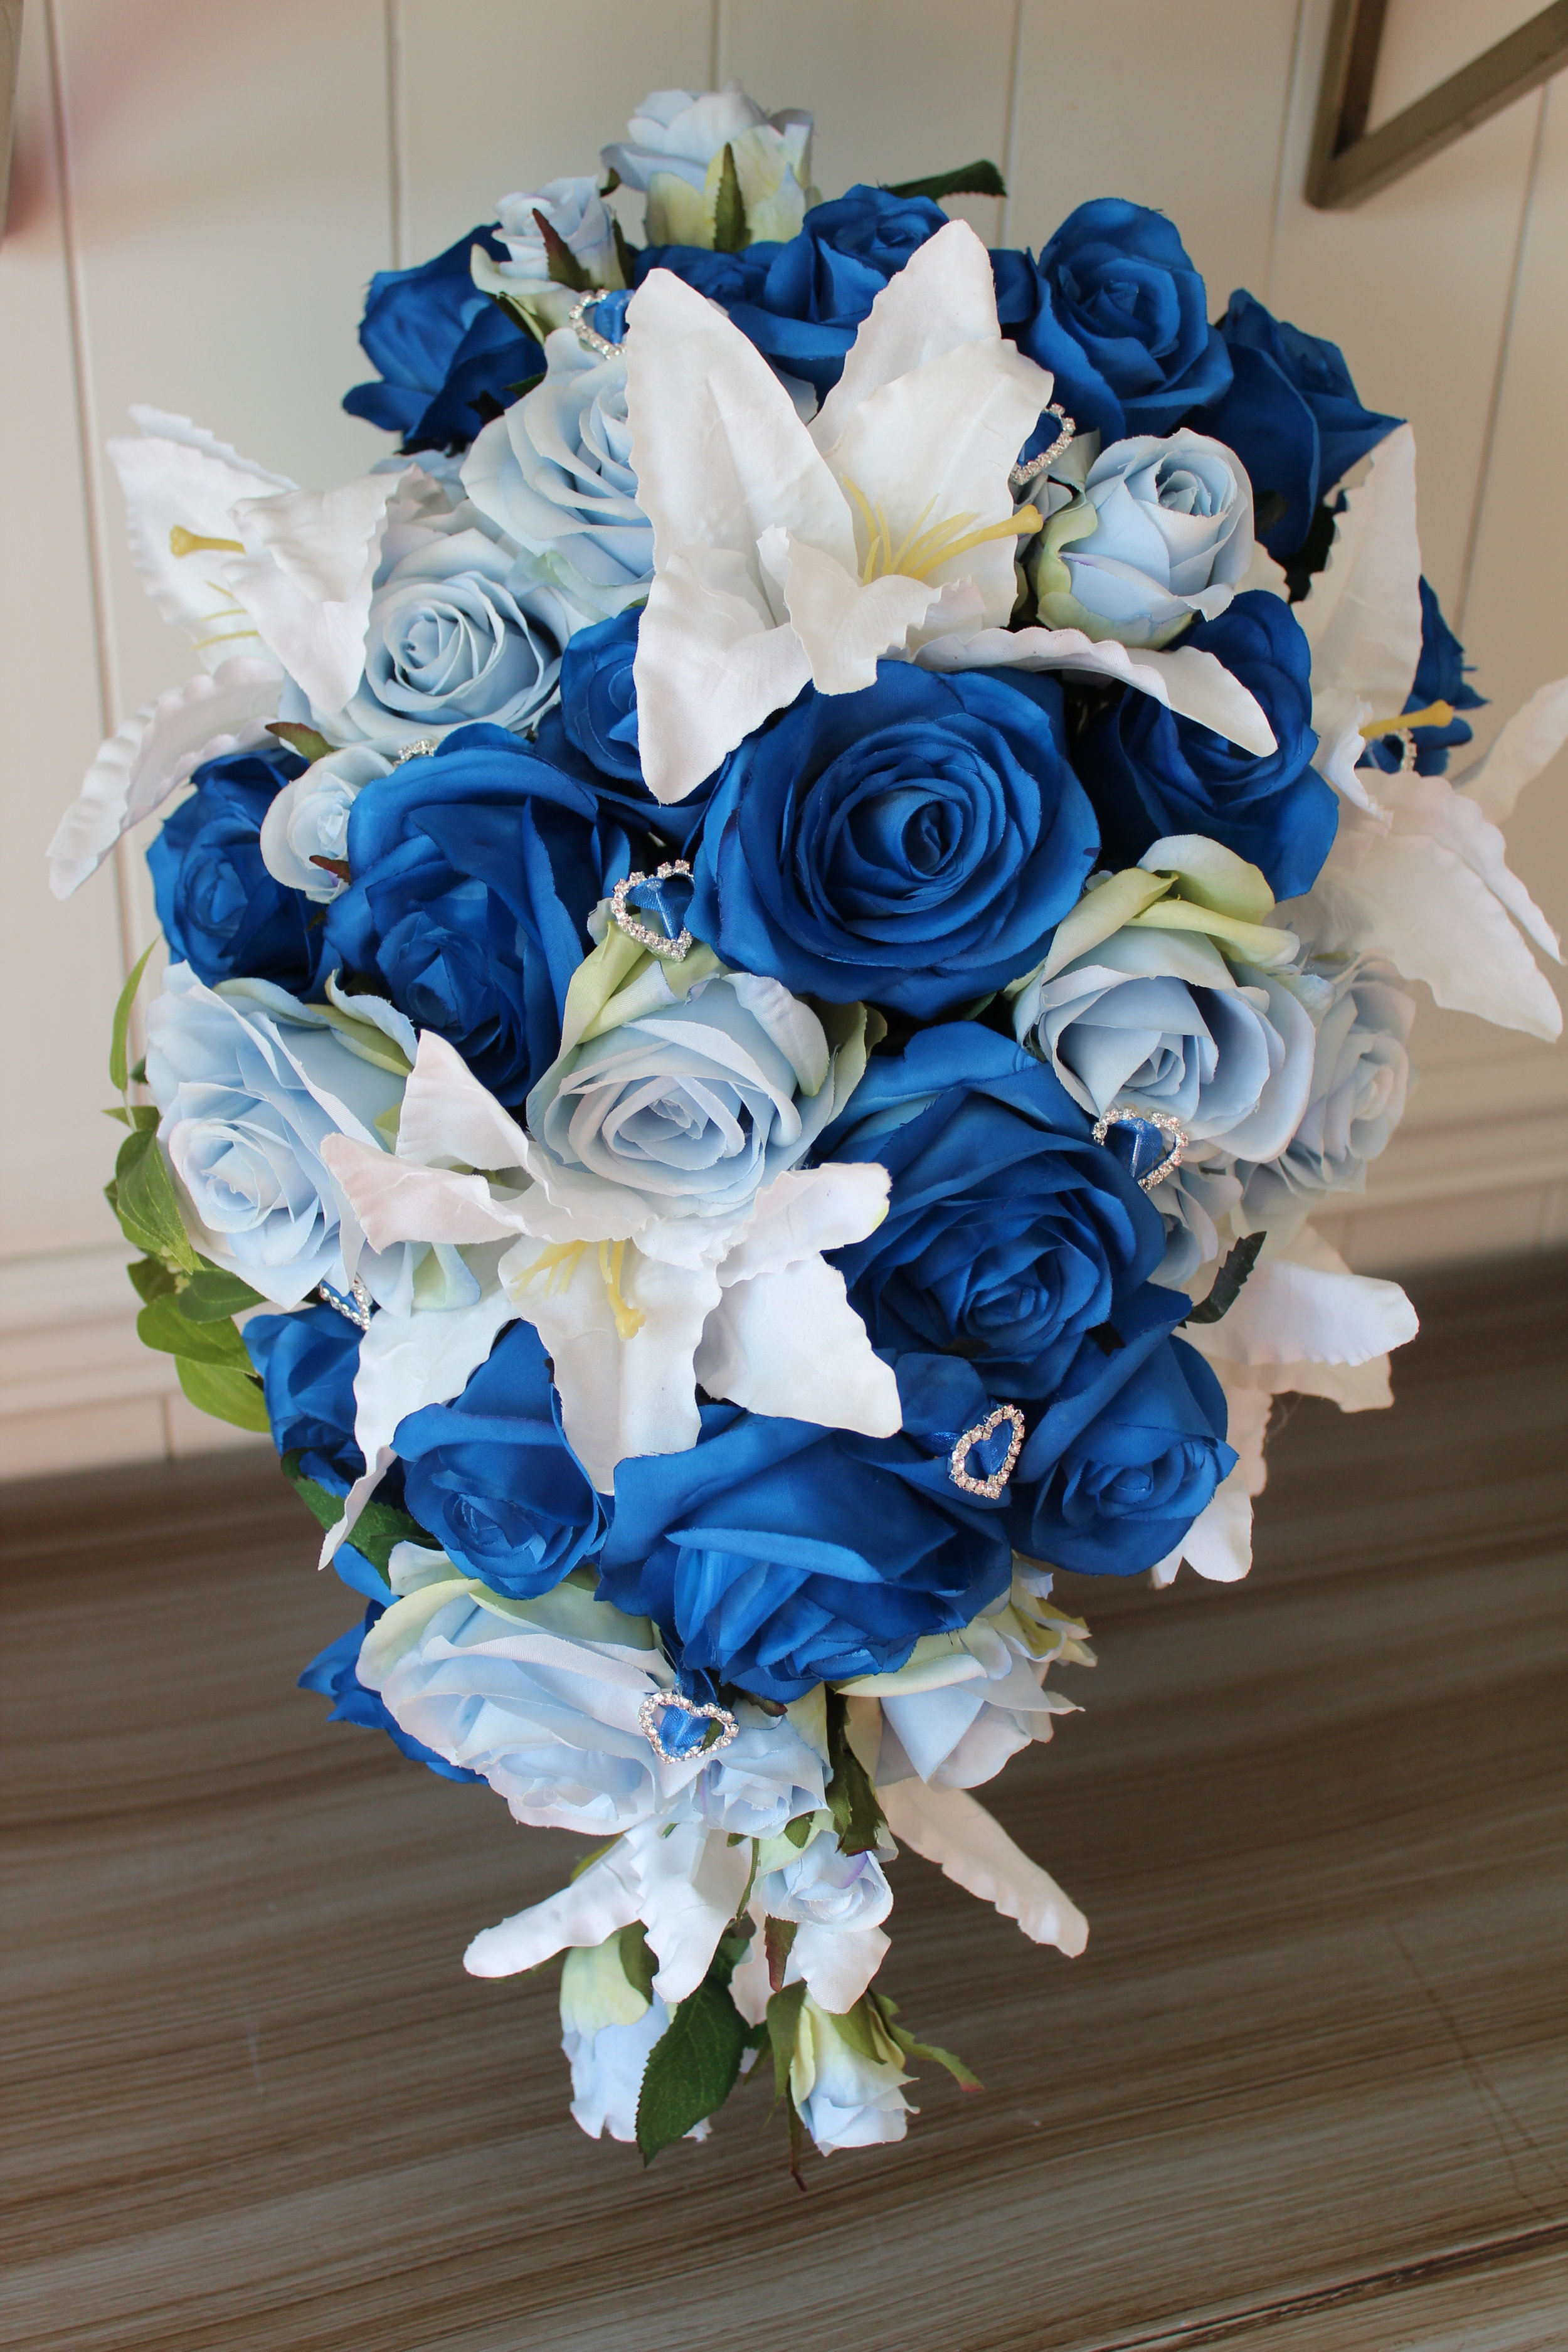 Order Silk Wedding Flowers Online | Love Is Blooming Blog ...